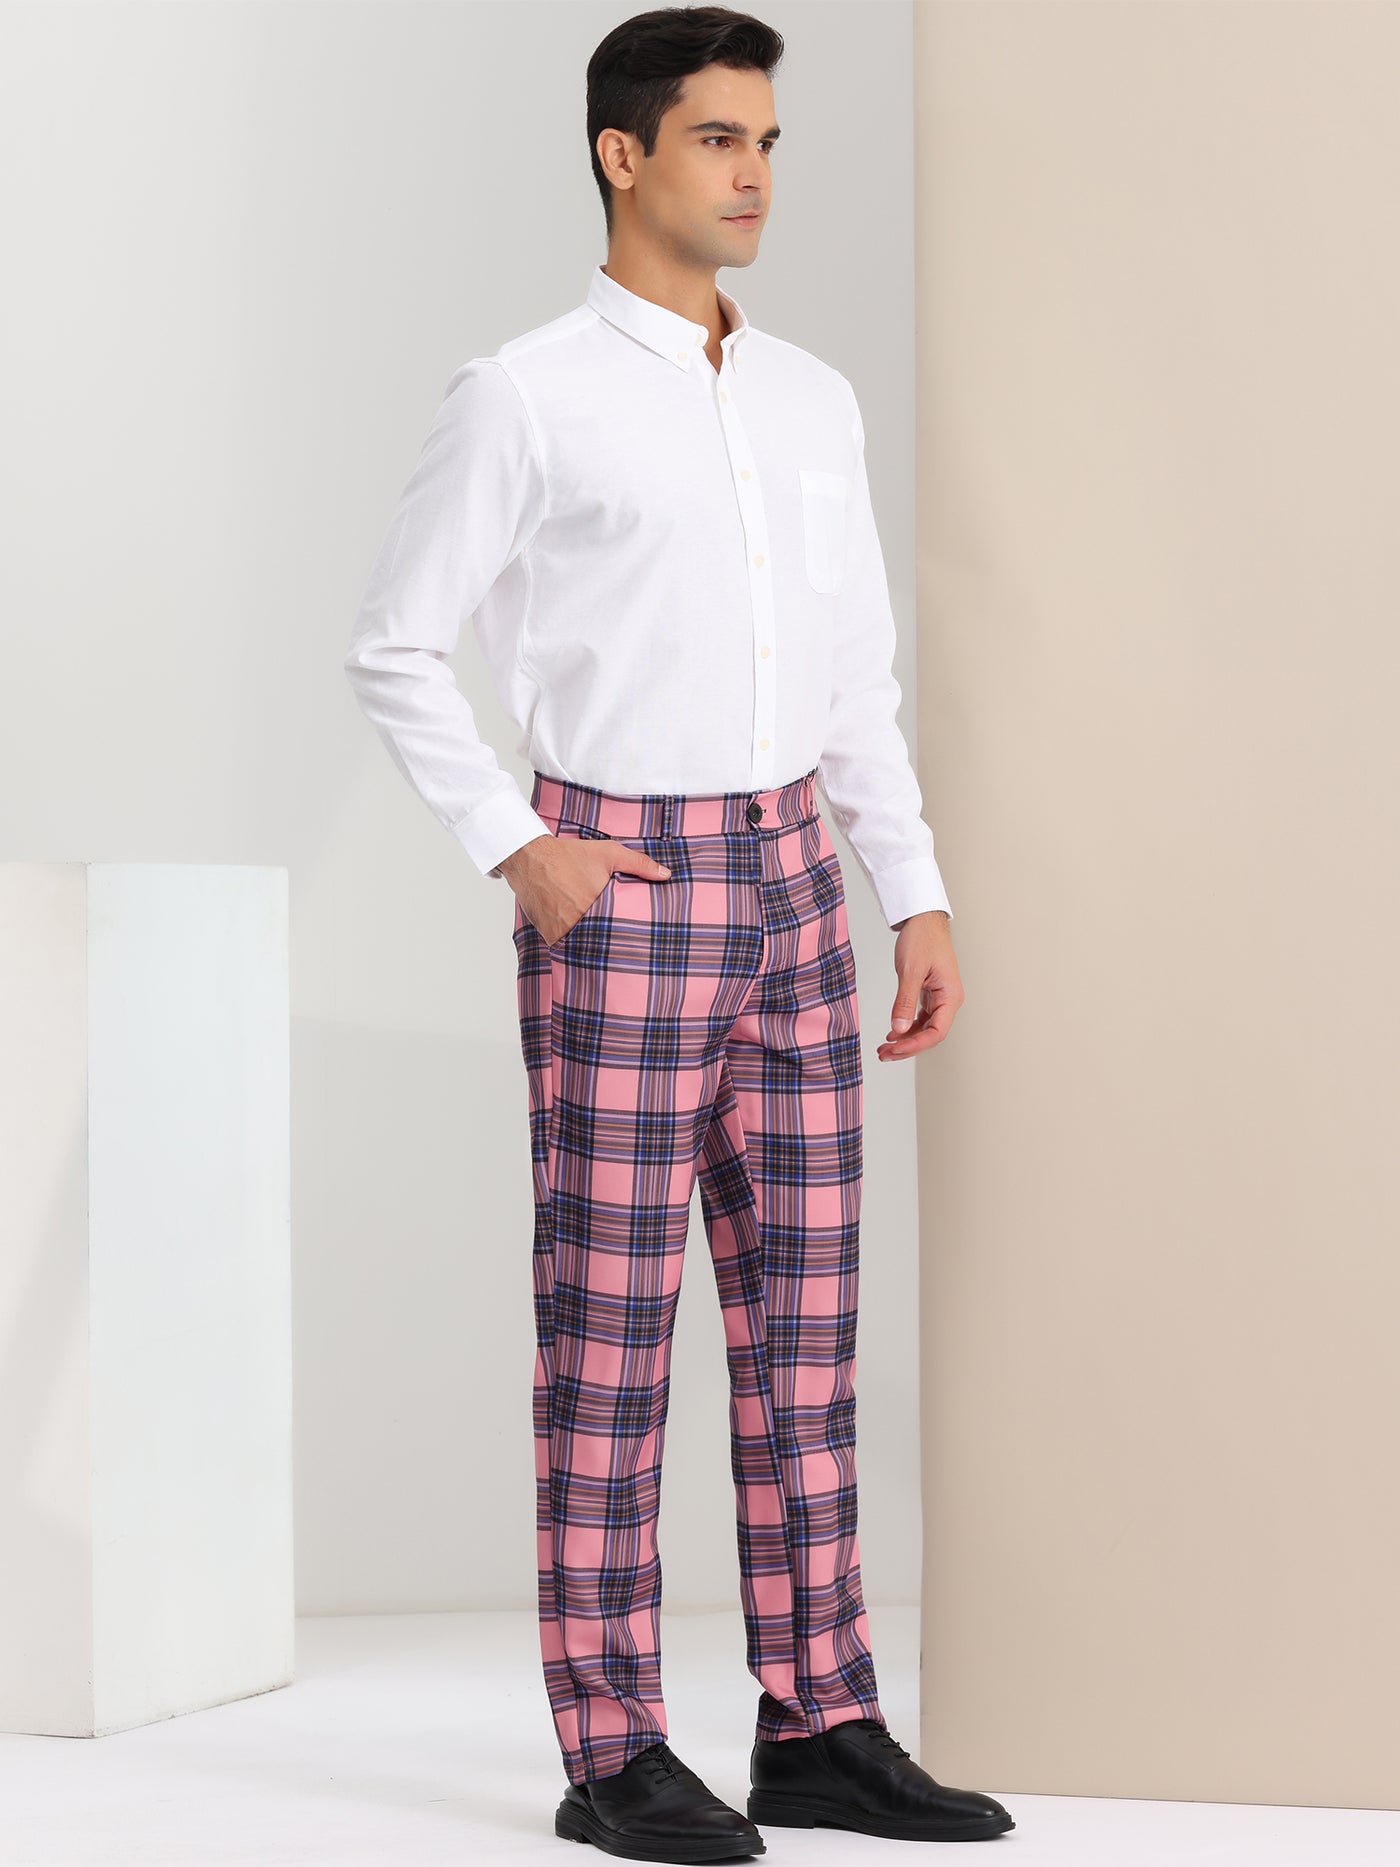 Bublédon Men's Casual Flat Front Stretch Business Plaid Dress Pants